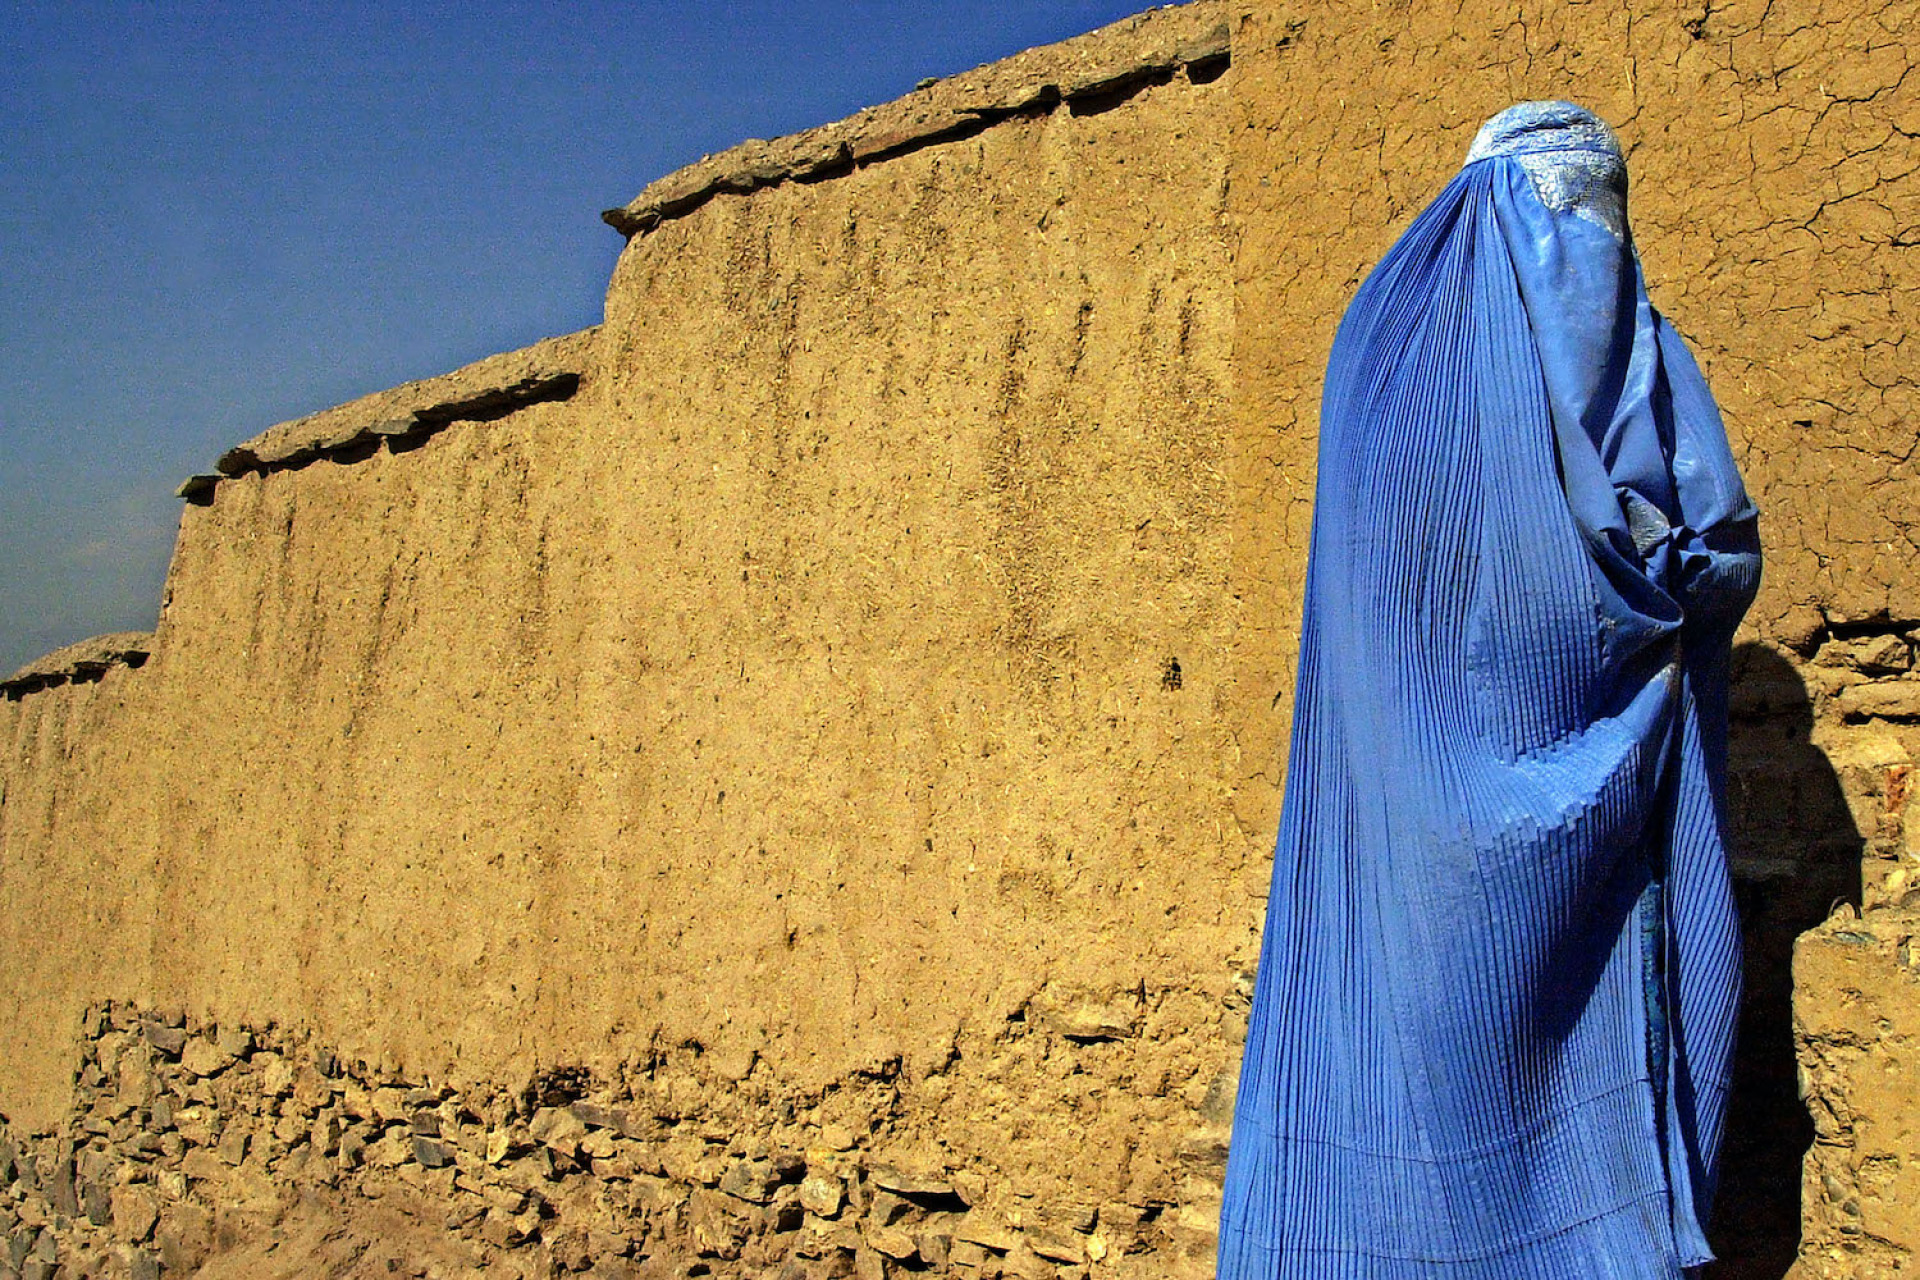 Δημήτρης Μεσσήνης Έξω από τον γιγαντιαίο τοίχο από λάσπη του τάφου του Μογγόλου αυτοκράτορα Babur, μια γυναίκα ντυμένη με ανοιχτή μπλε μπούρκα περιμένει την οικογένειά της να φτάσει στην Καμπούλ, Αφγανιστάν, 2 Νοεμβρίου 2001. Τα αεροπλάνα των Η.Π.Α. βομβάρδισαν σφοδρά την πρώτη γραμμή των Ταλιμπάν βόρεια της Καμπούλ. Έκθεση Δύναμη και οδύνη στο Αφγανιστάν: το καθεστώς Ταλιμπάν 1996-2001 Δημήτρης Μεσσήνης, Πολυχώρος Πολιτισμού Ισλαχανέ – Πρώην Σχολή Τεχνών και Επαγγελμάτων Χαμιδιέ